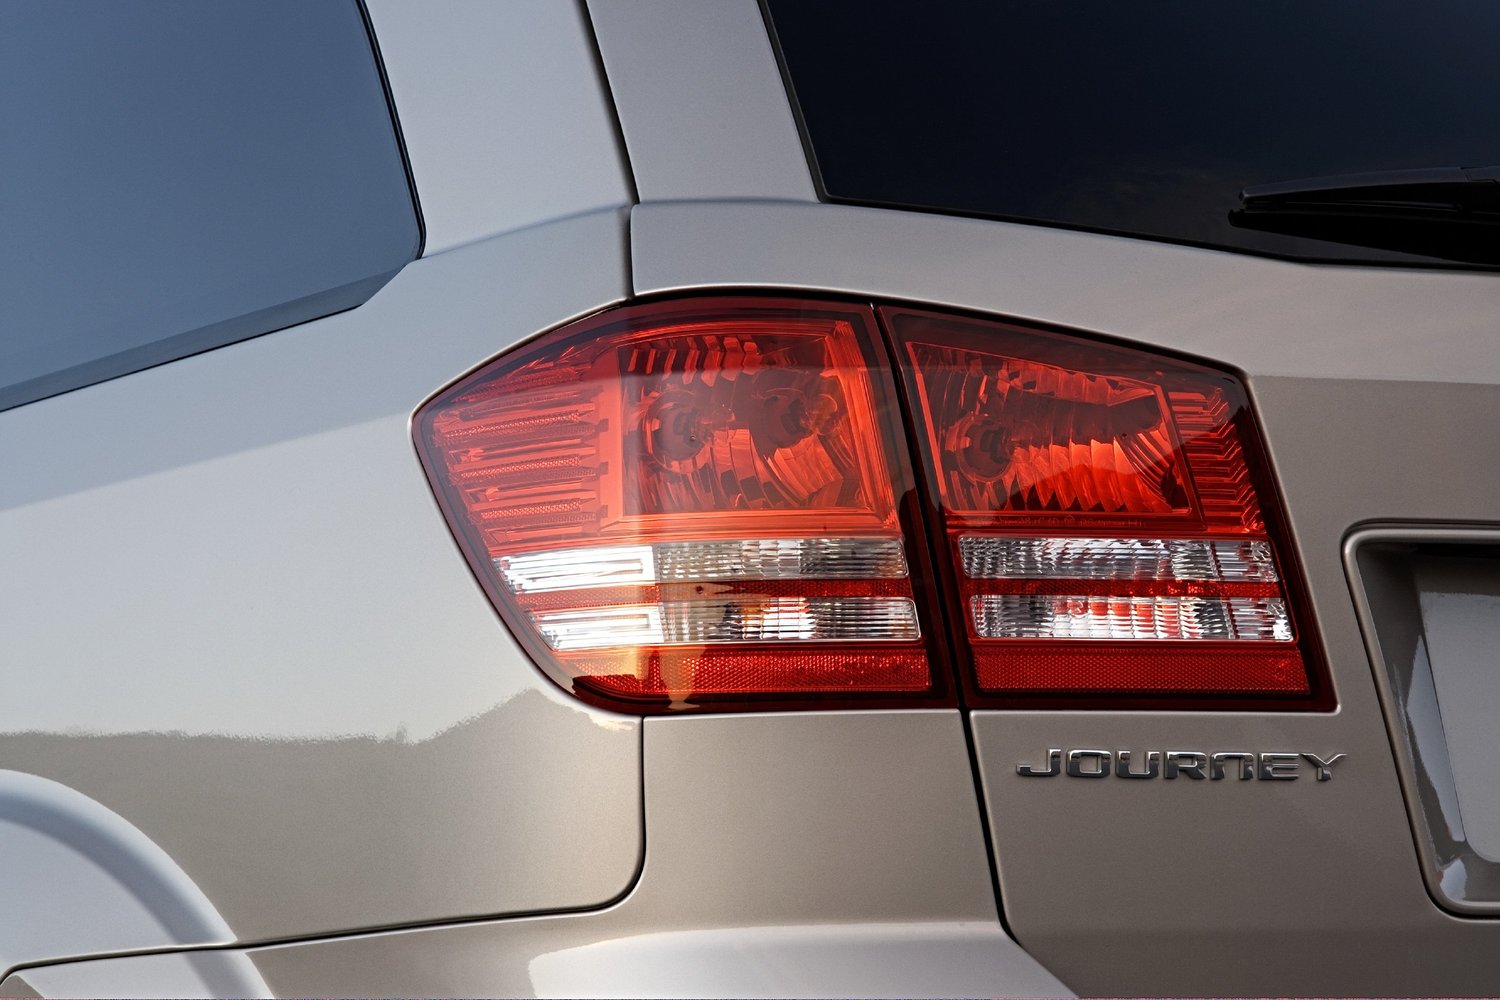 кроссовер Dodge Journey 2008 - 2016г выпуска модификация 2.4 MT (175 л.с.)